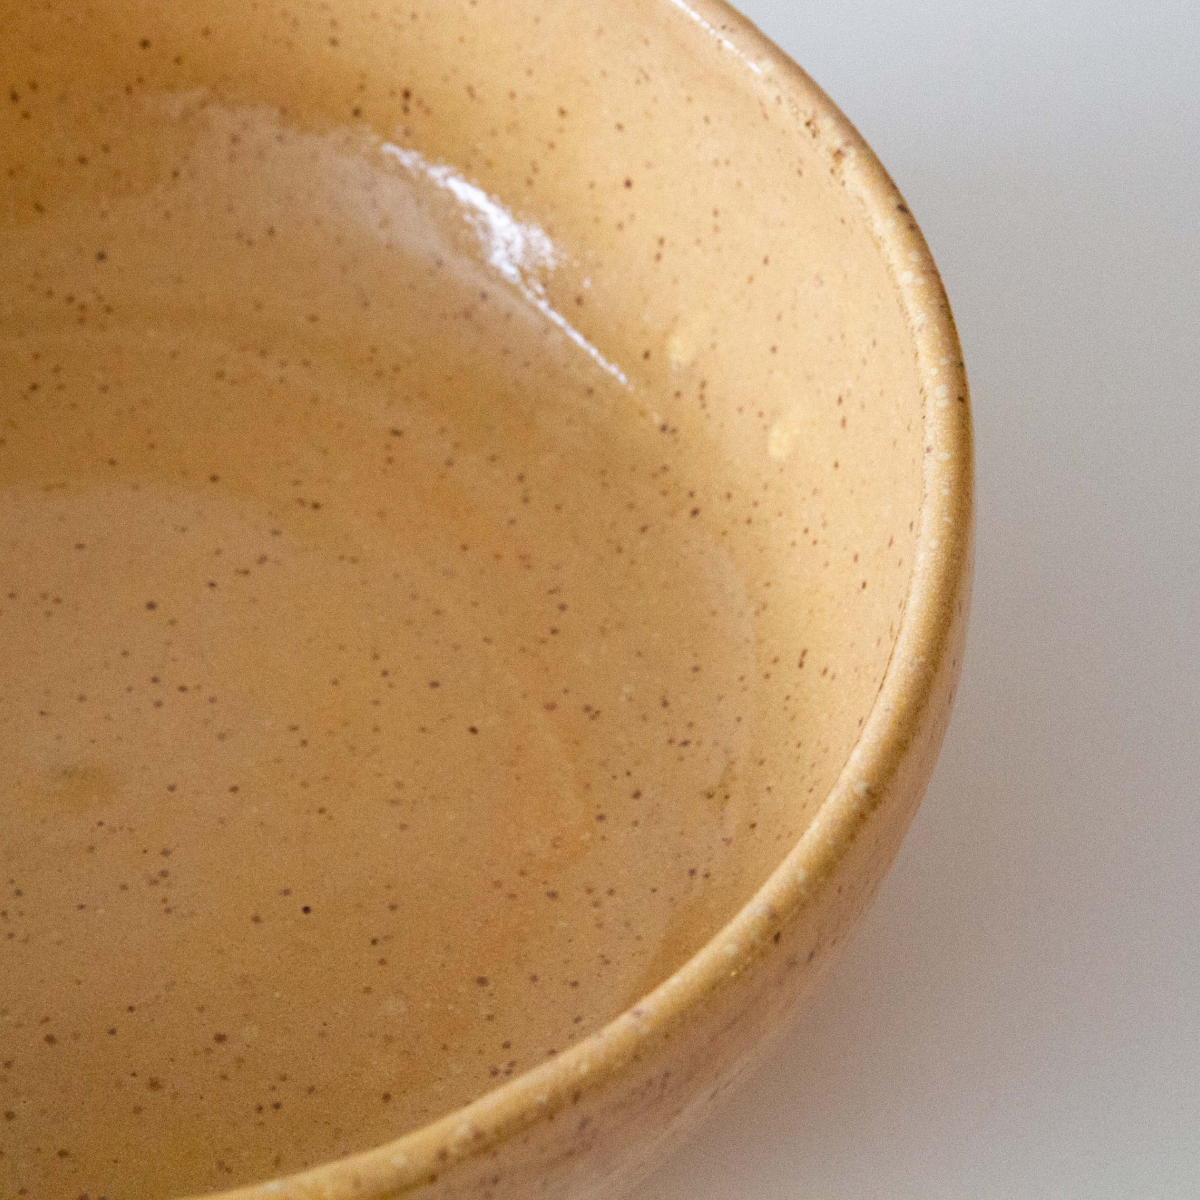 Golden sand bowl large